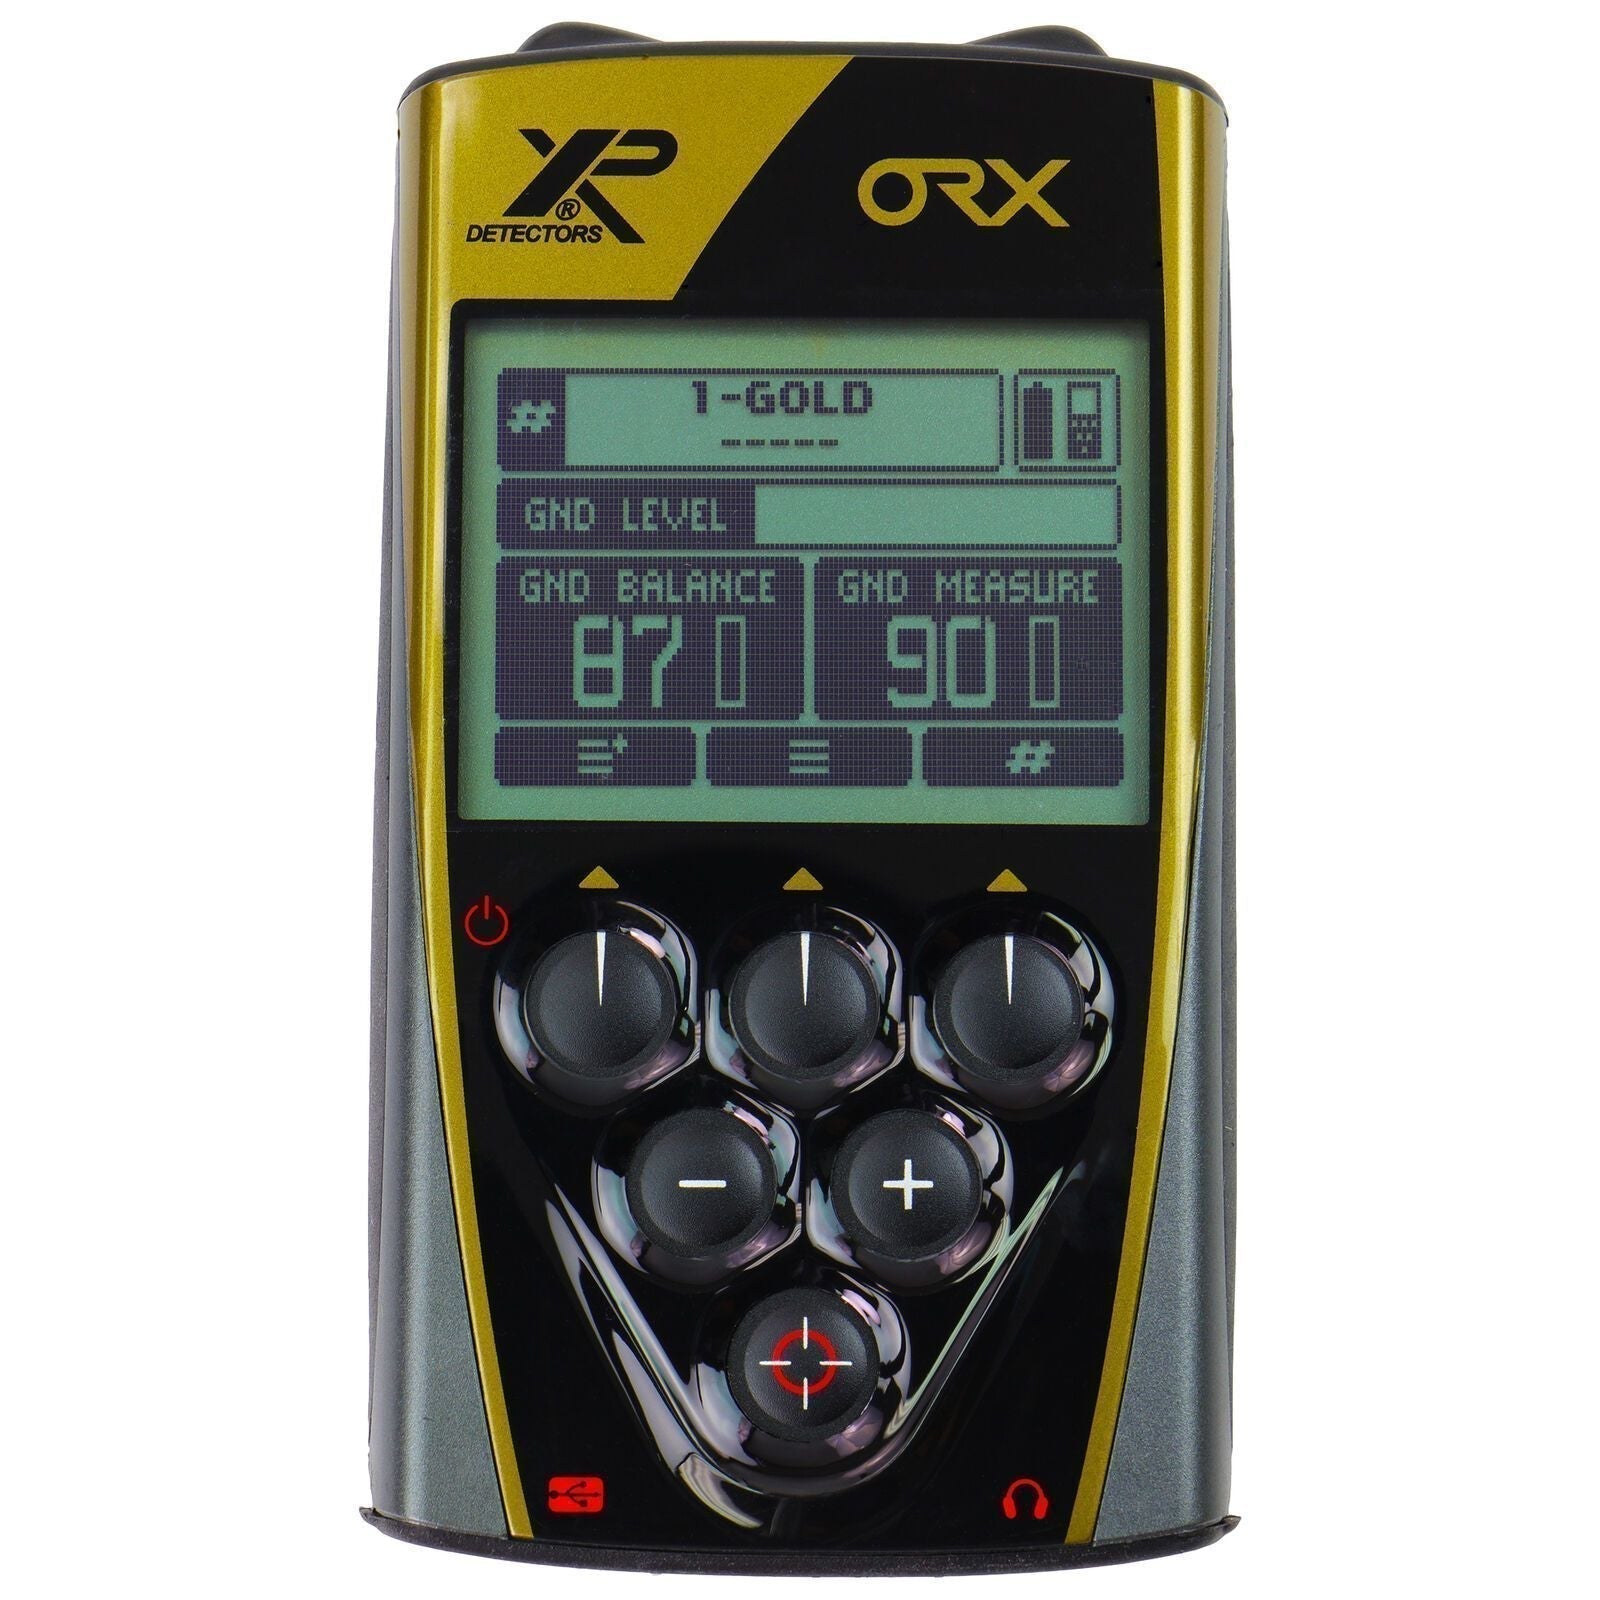 XP ORX Metal Detector 9.5x5" Elliptical HF Coil-Destination Gold Detectors